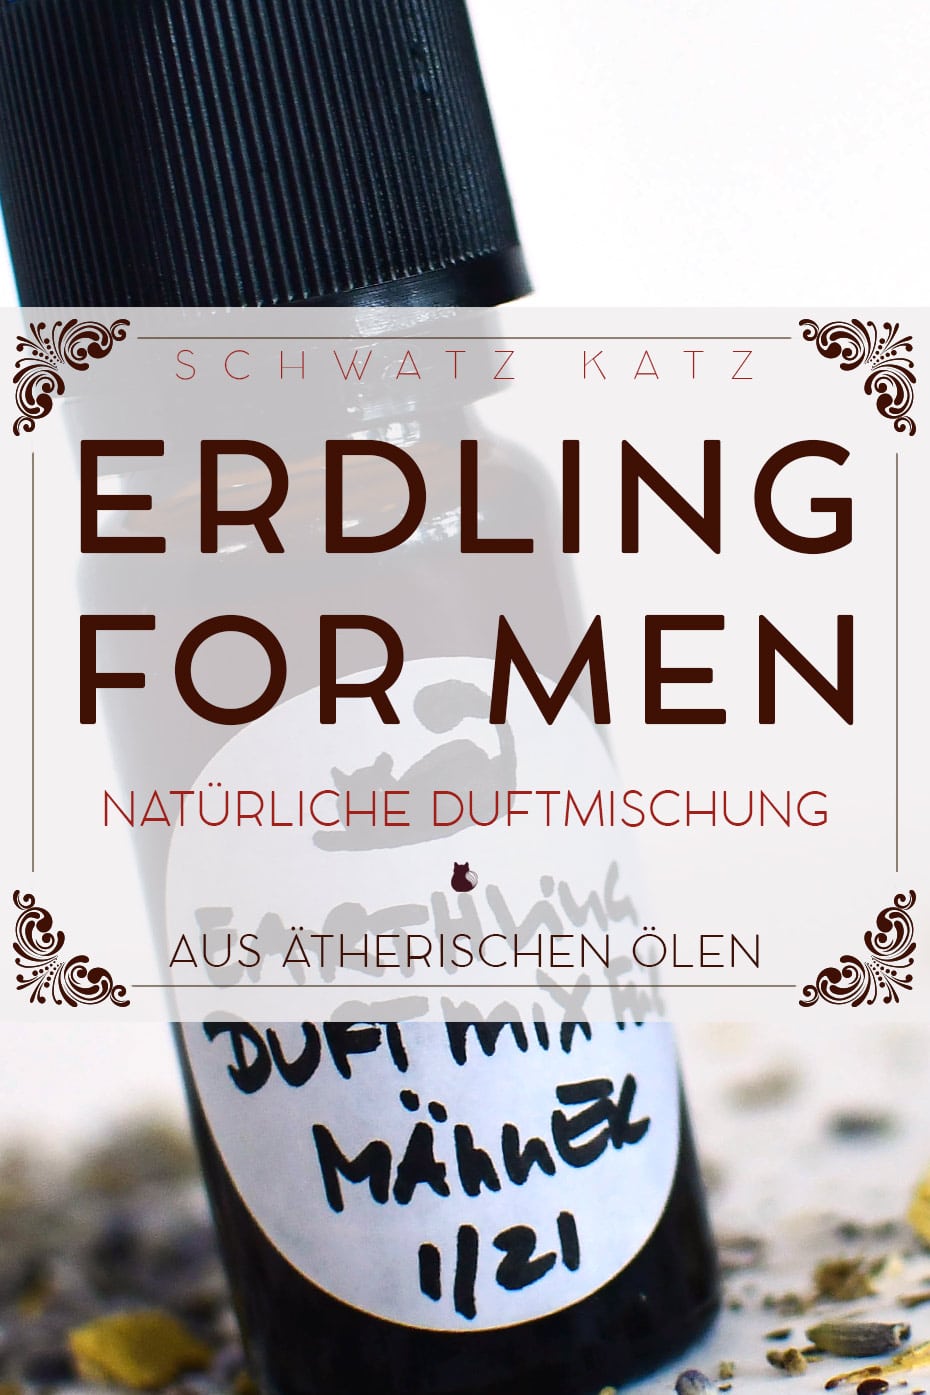 Umwerfende Duftmischung für Männer »Erdling« | Schwatz Katz